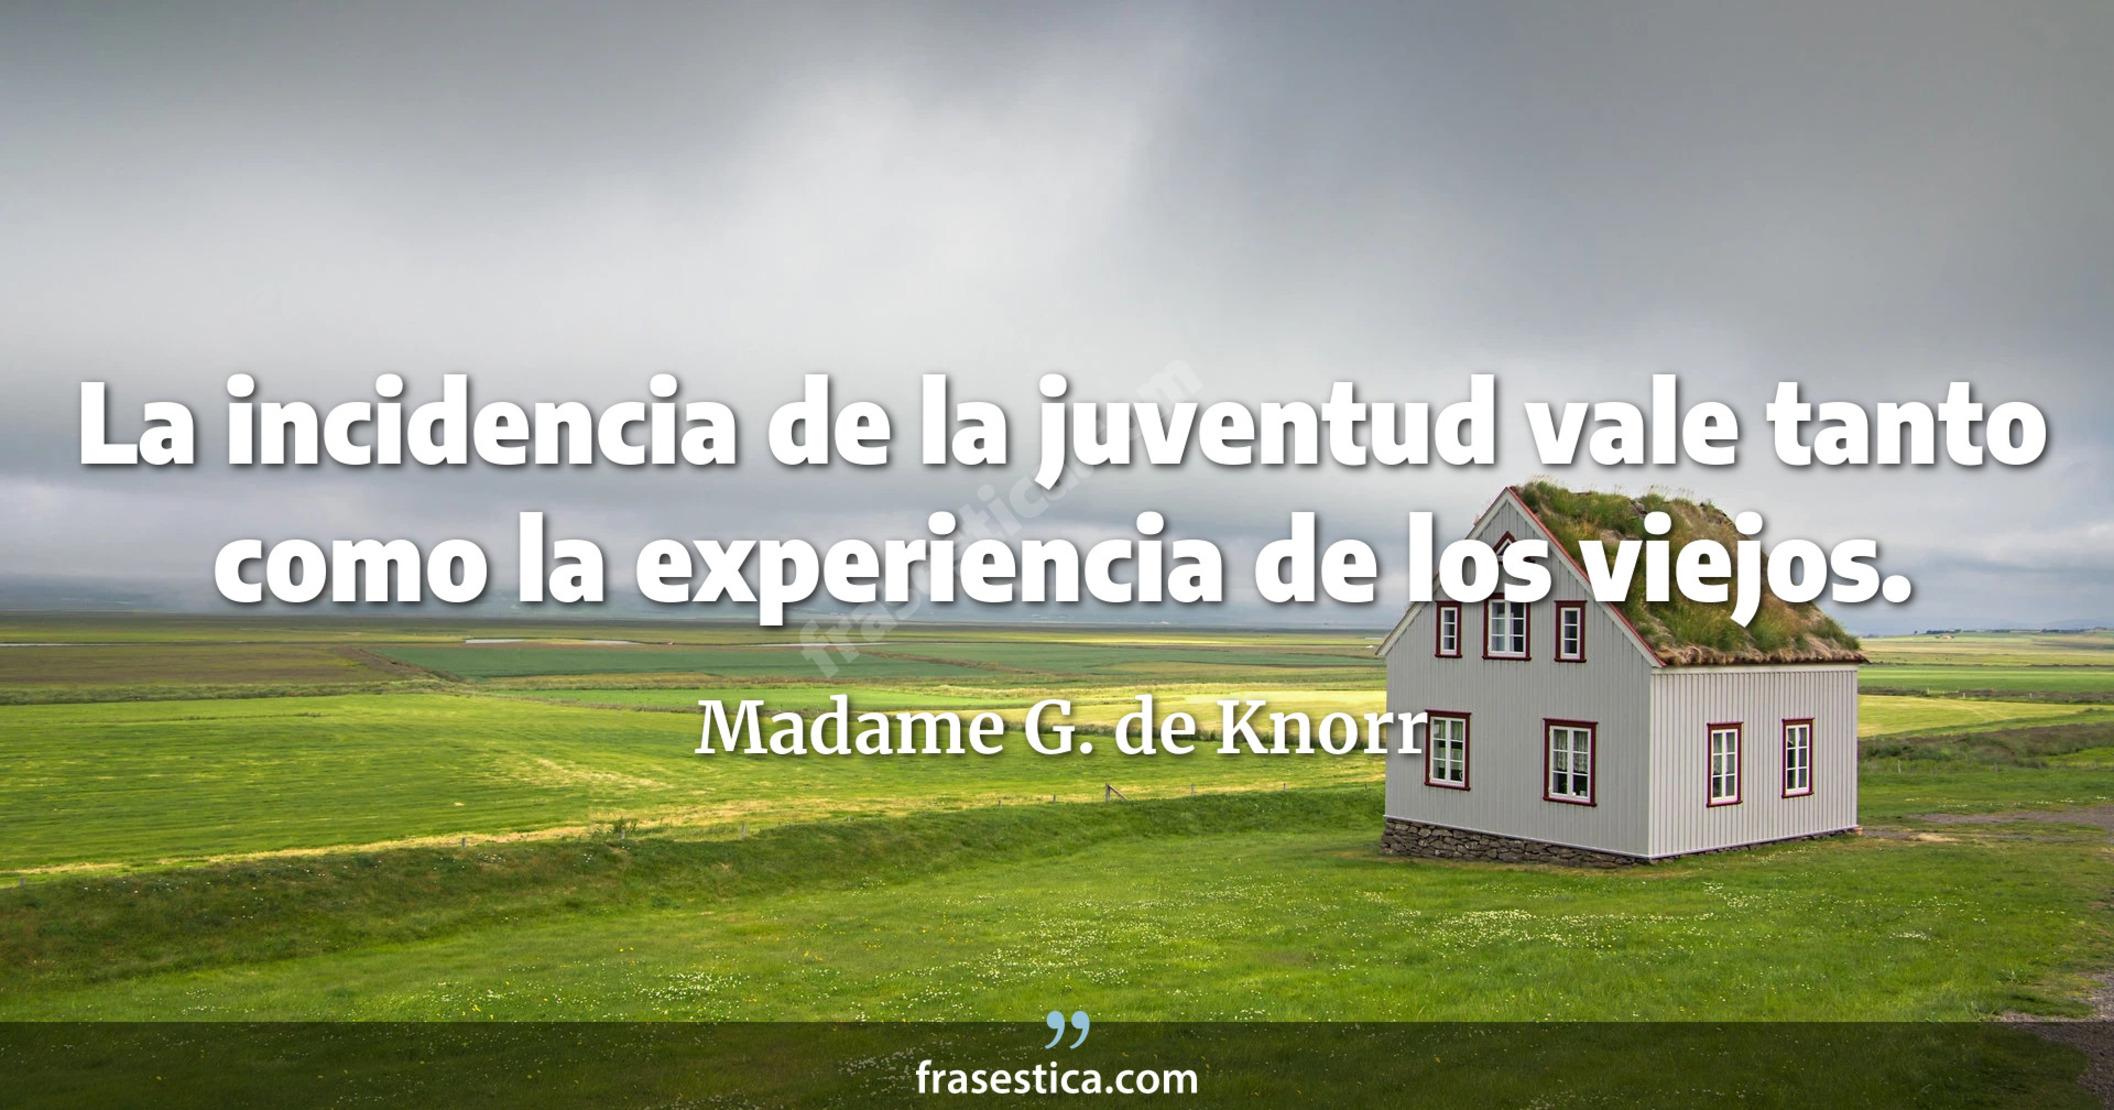 La incidencia de la juventud vale tanto como la experiencia de los viejos. - Madame G. de Knorr